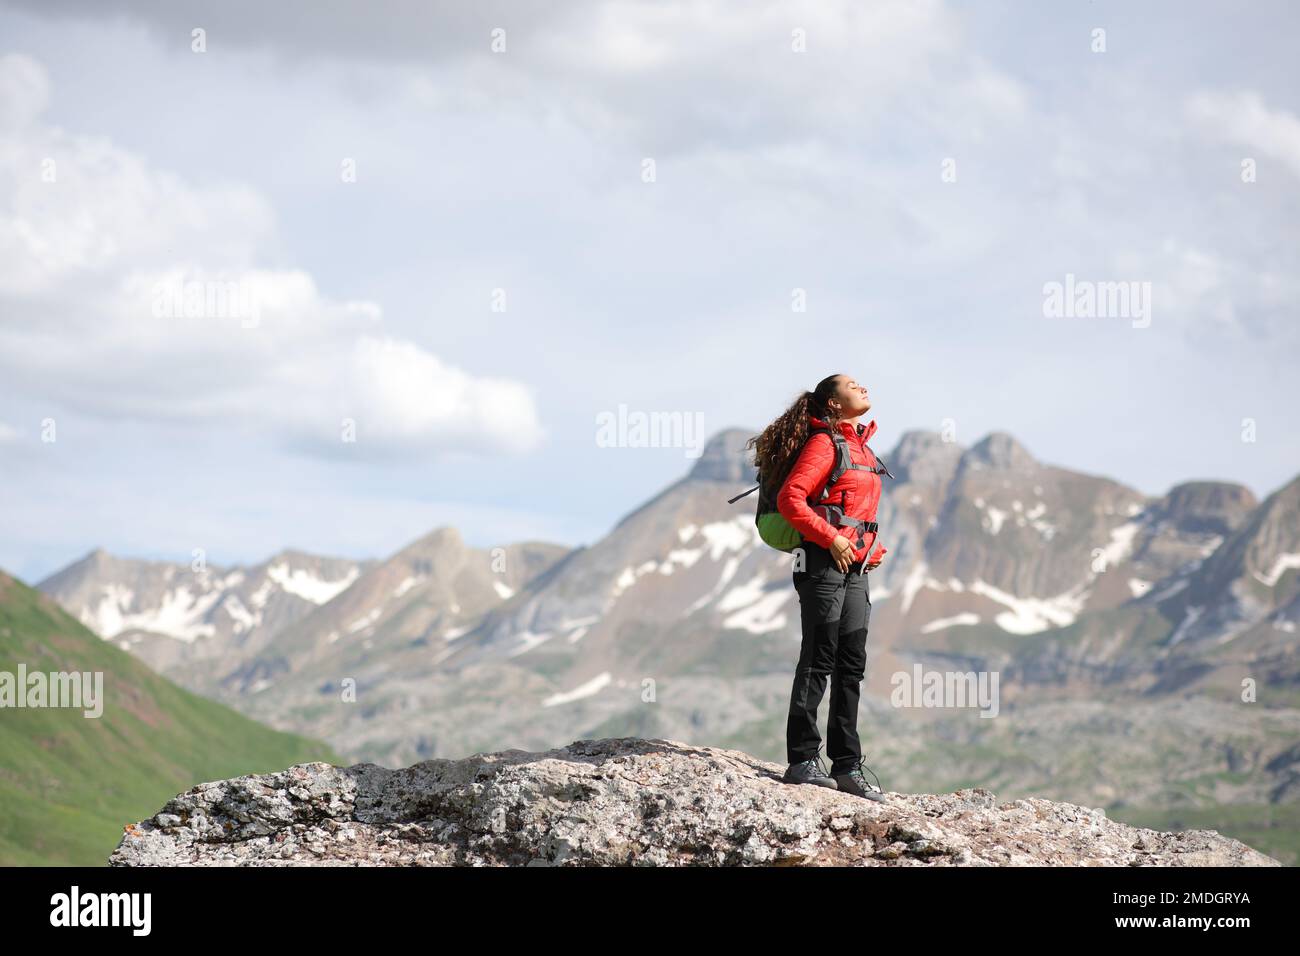 Randonneur en rouge respirant de l'air frais au sommet d'une montagne Banque D'Images